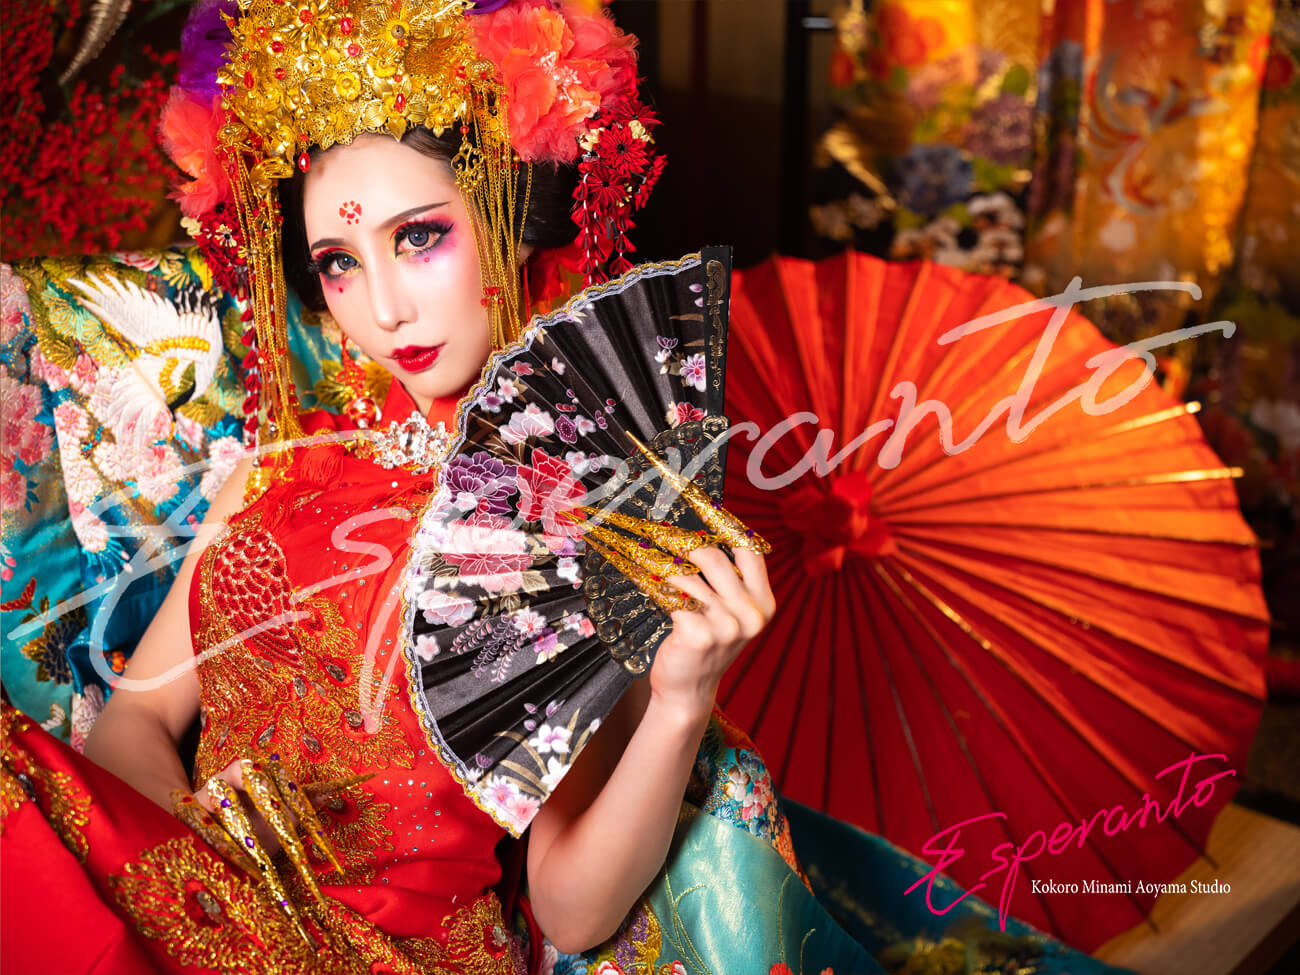 チャイナドレスで中華風の変身体験 | エスペラント KOKORO南青山スタジオ